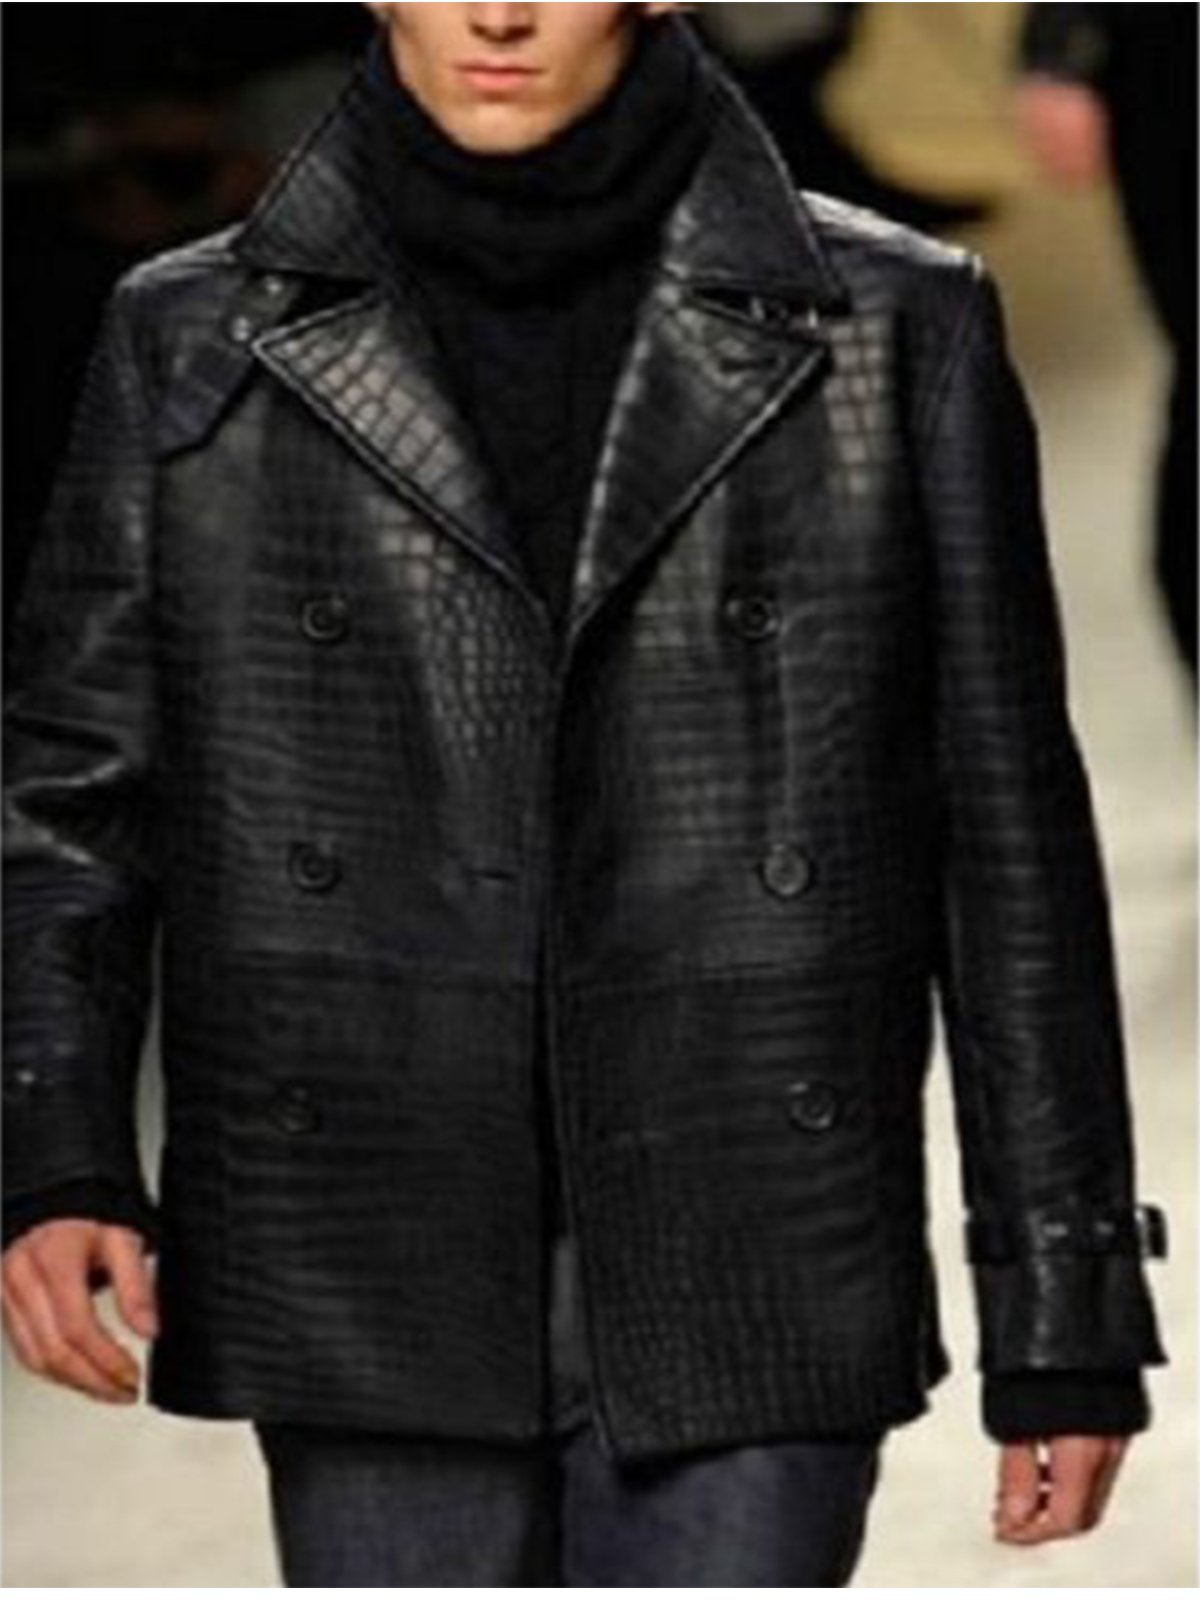 Burberry Alligator Leather Jacket in Black for Men